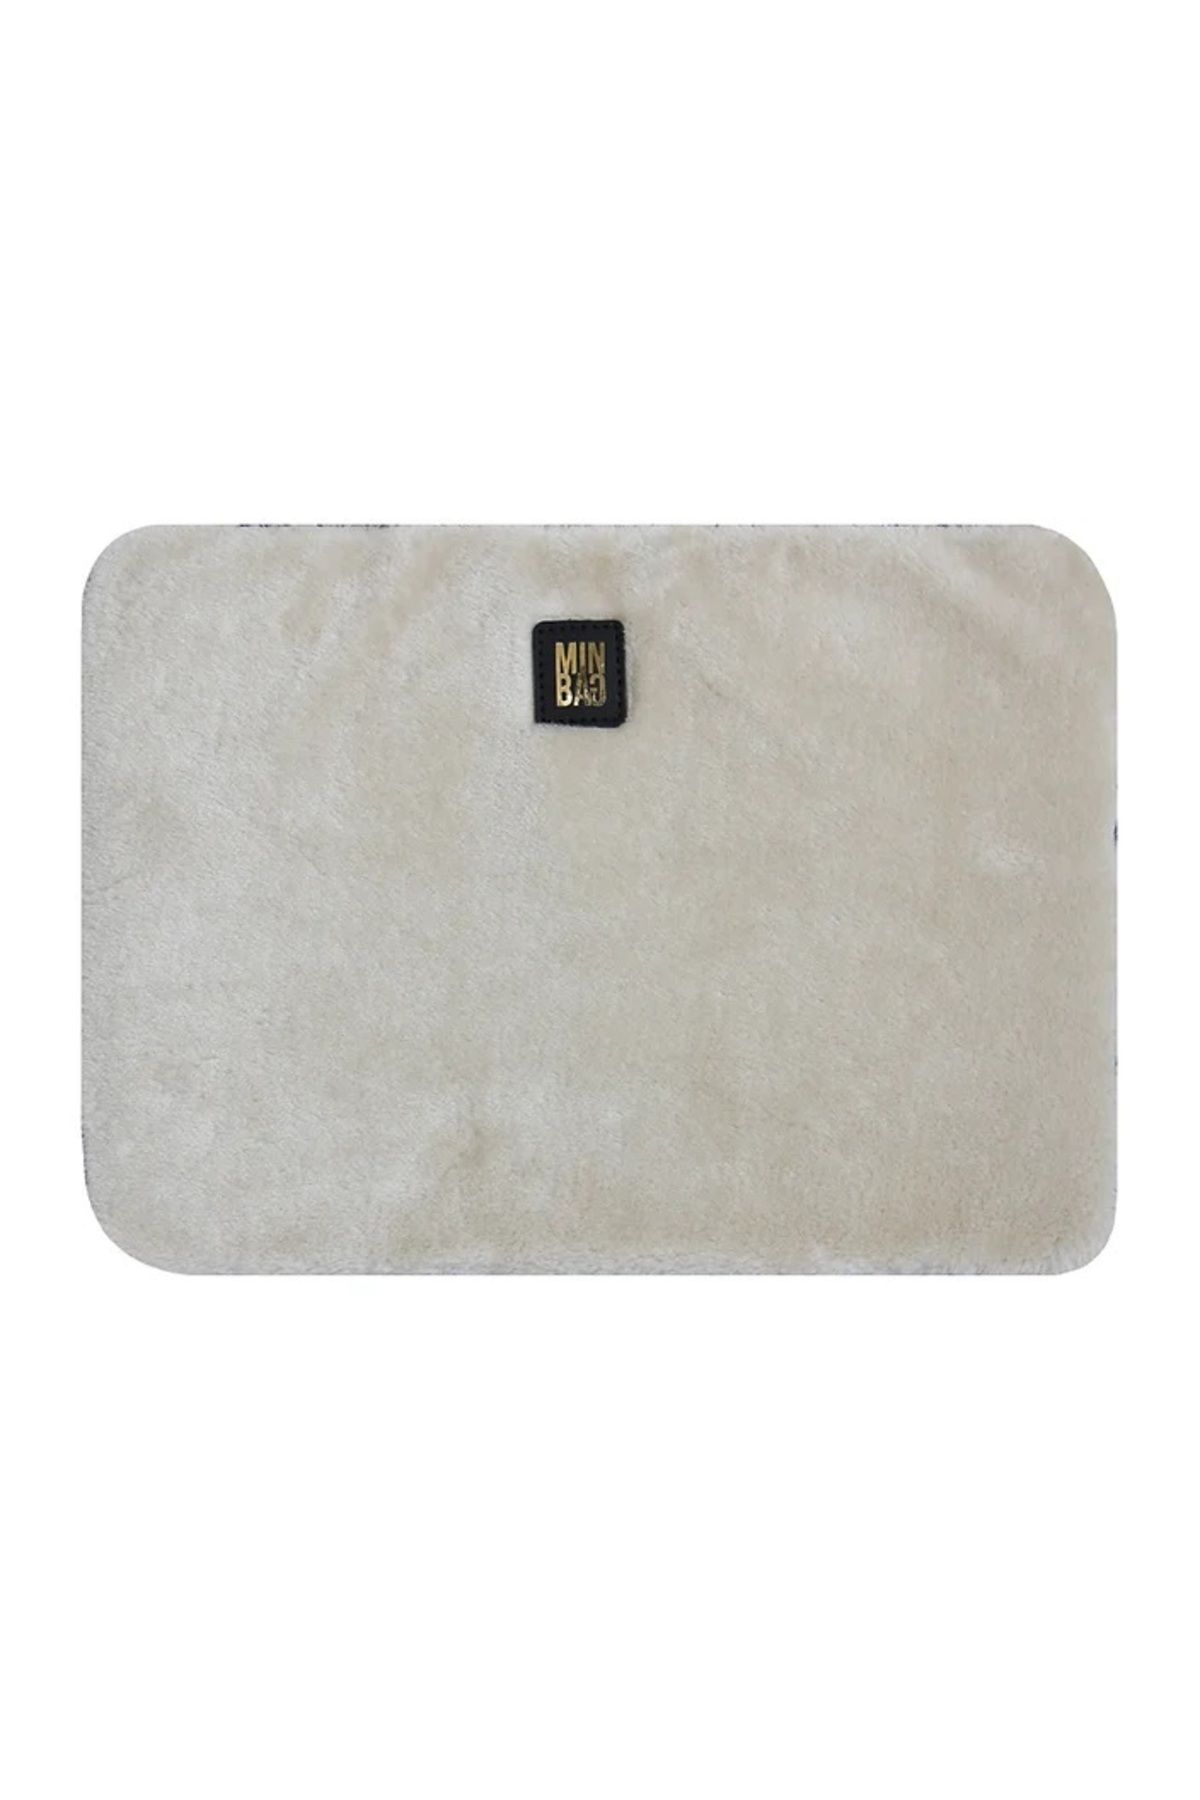 Minbag Plush Krem Laptop Kılıfı 572-11